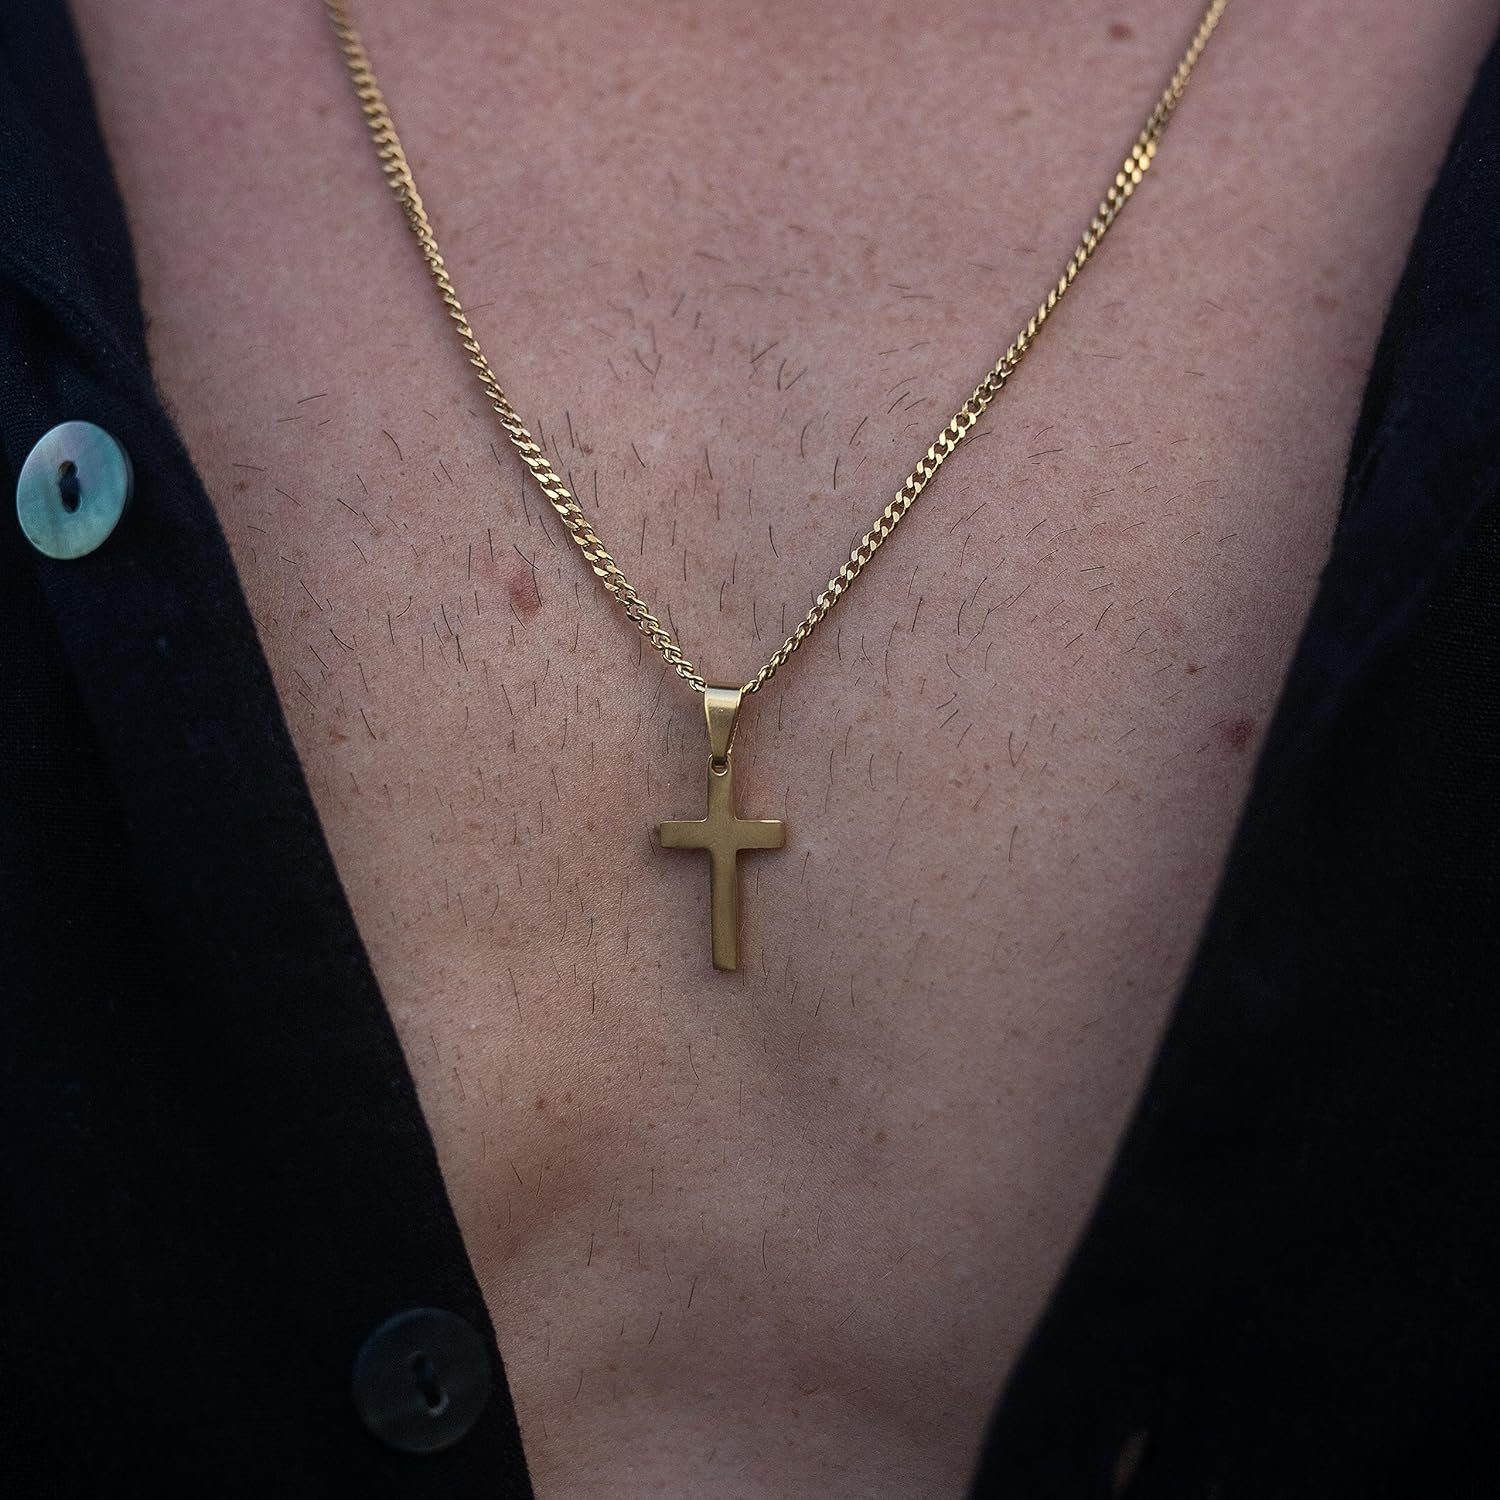 by Nami Anhänger Made Herren, Kreuzkette Anhänger Kreuz Gliederkette Edelstahl mit Kette Gold Halskette